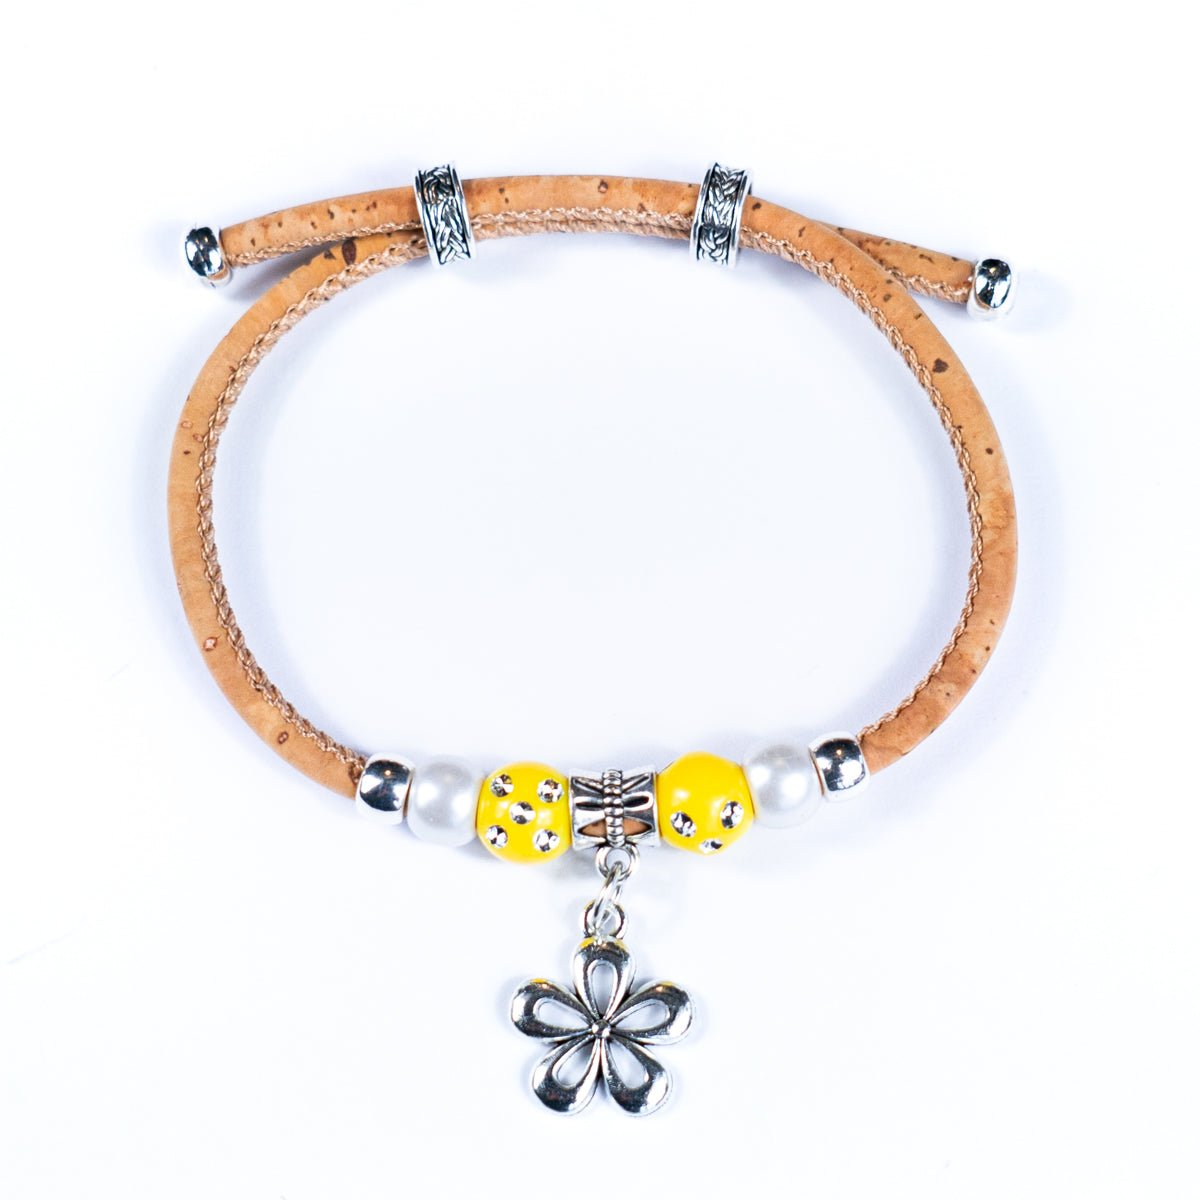 Bracelet fabriqué à la main avec fil de liège naturel et perles de porcelaine BR-482-MIX-10